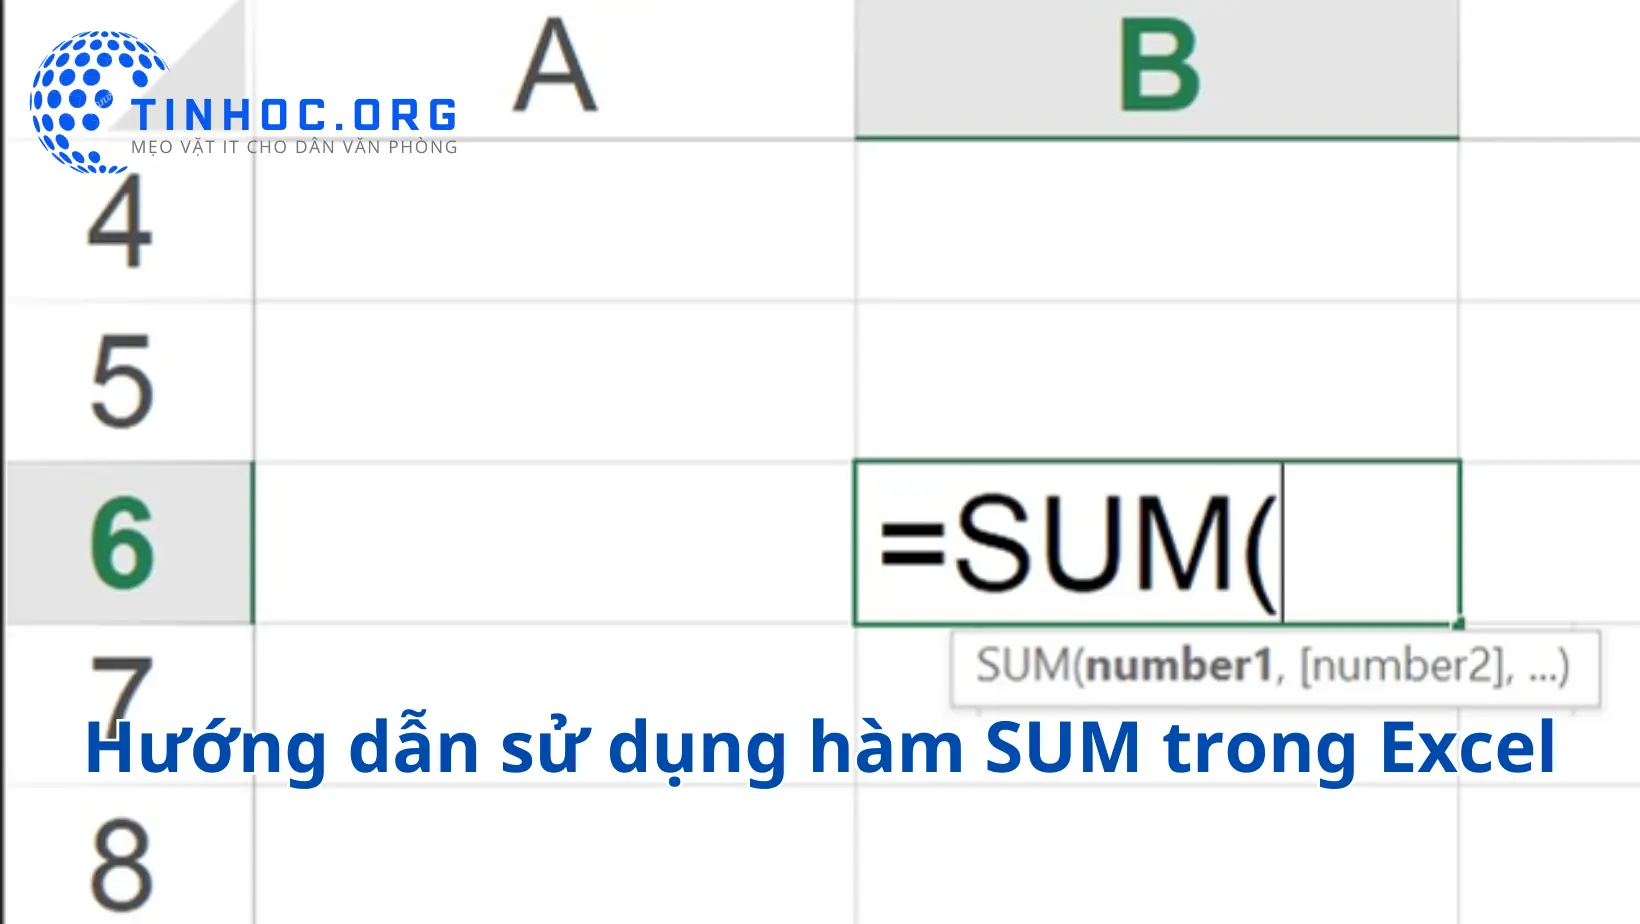 Bài viết này sẽ hướng dẫn bạn chi tiết và dễ hiểu cách sử dụng hàm SUM để thực hiện các phép tính tổng trong Excel.